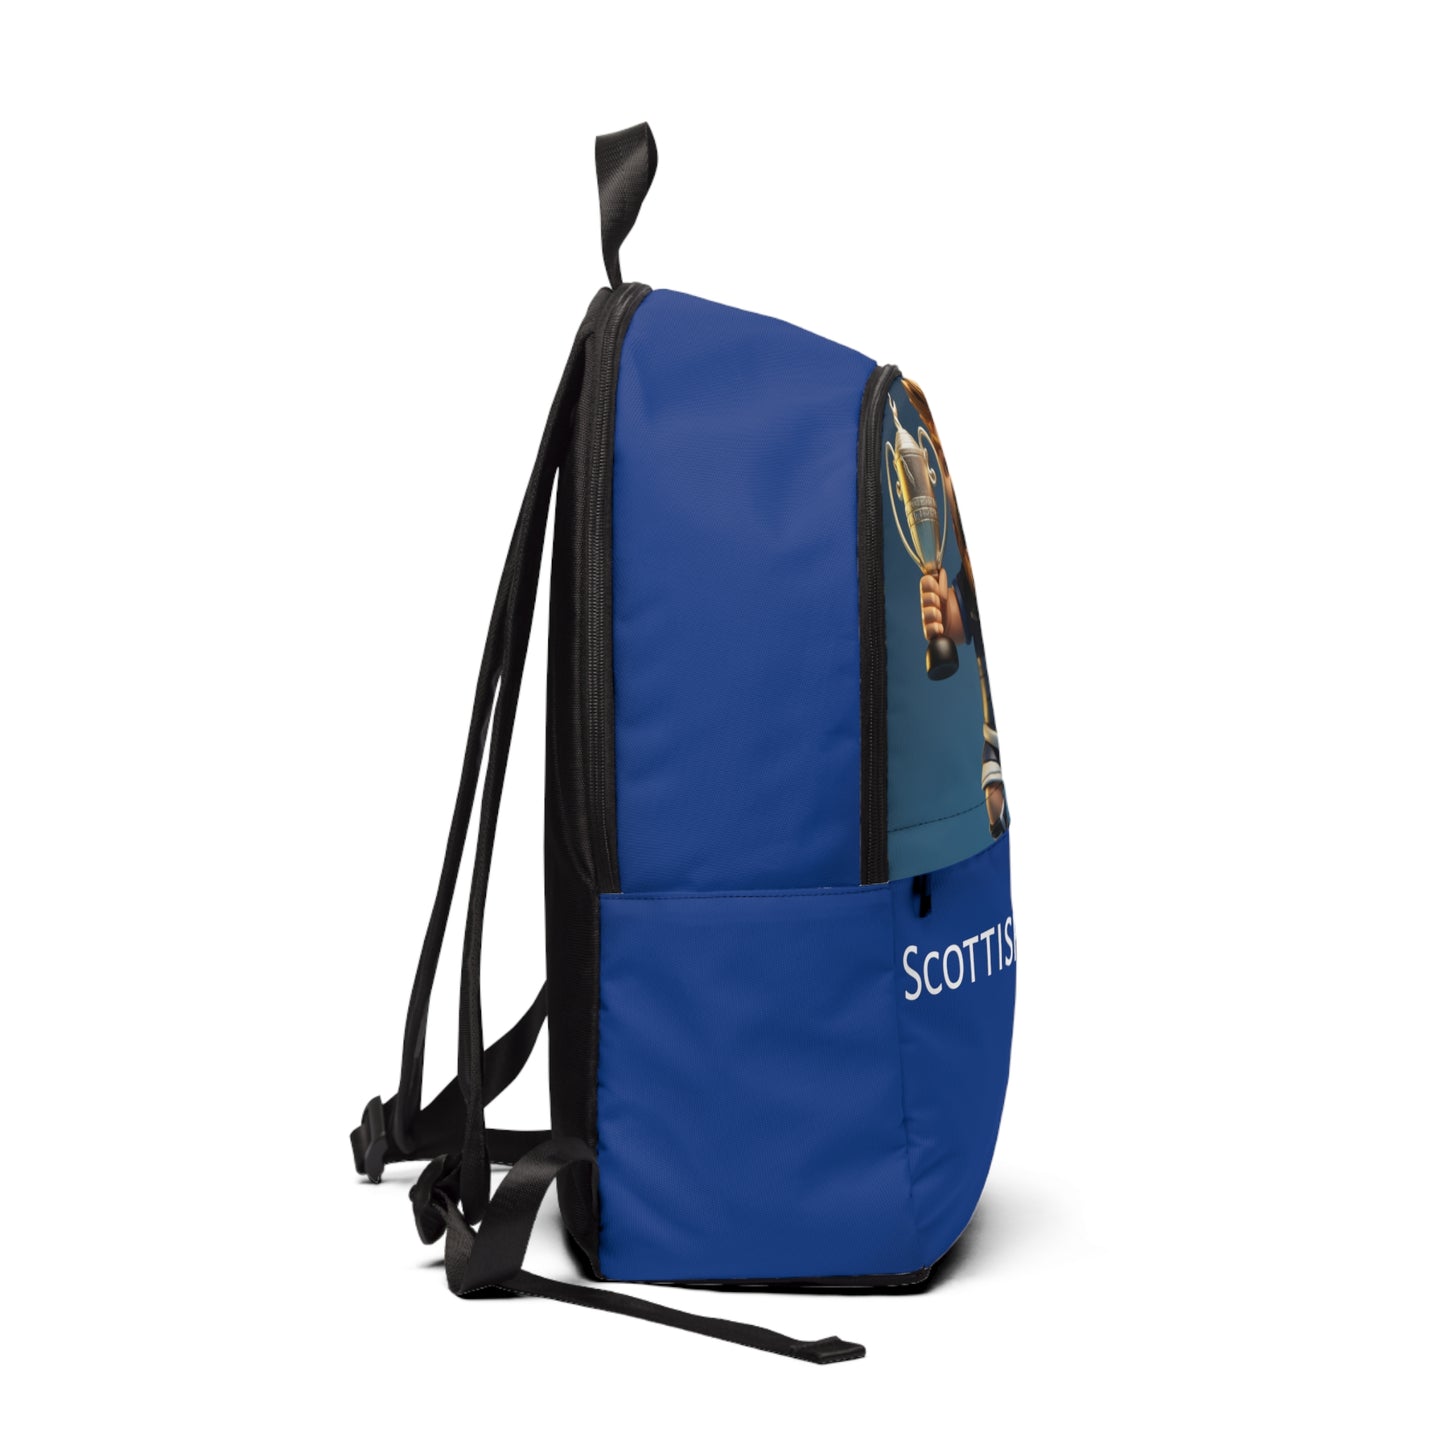 Scotland backpack